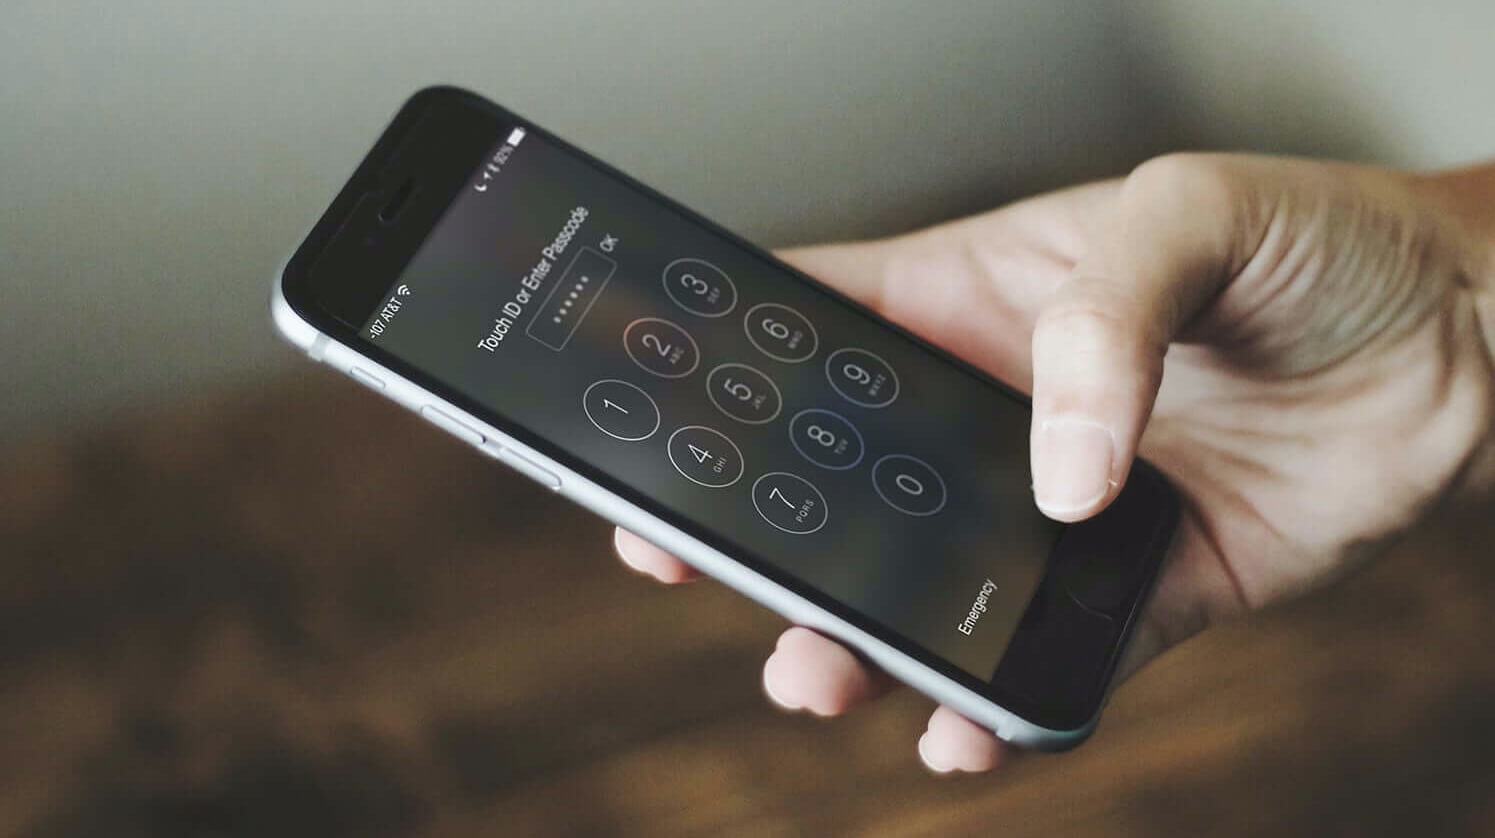 Как разблокировать экран или iCloud iPhone, если забыл пароль?